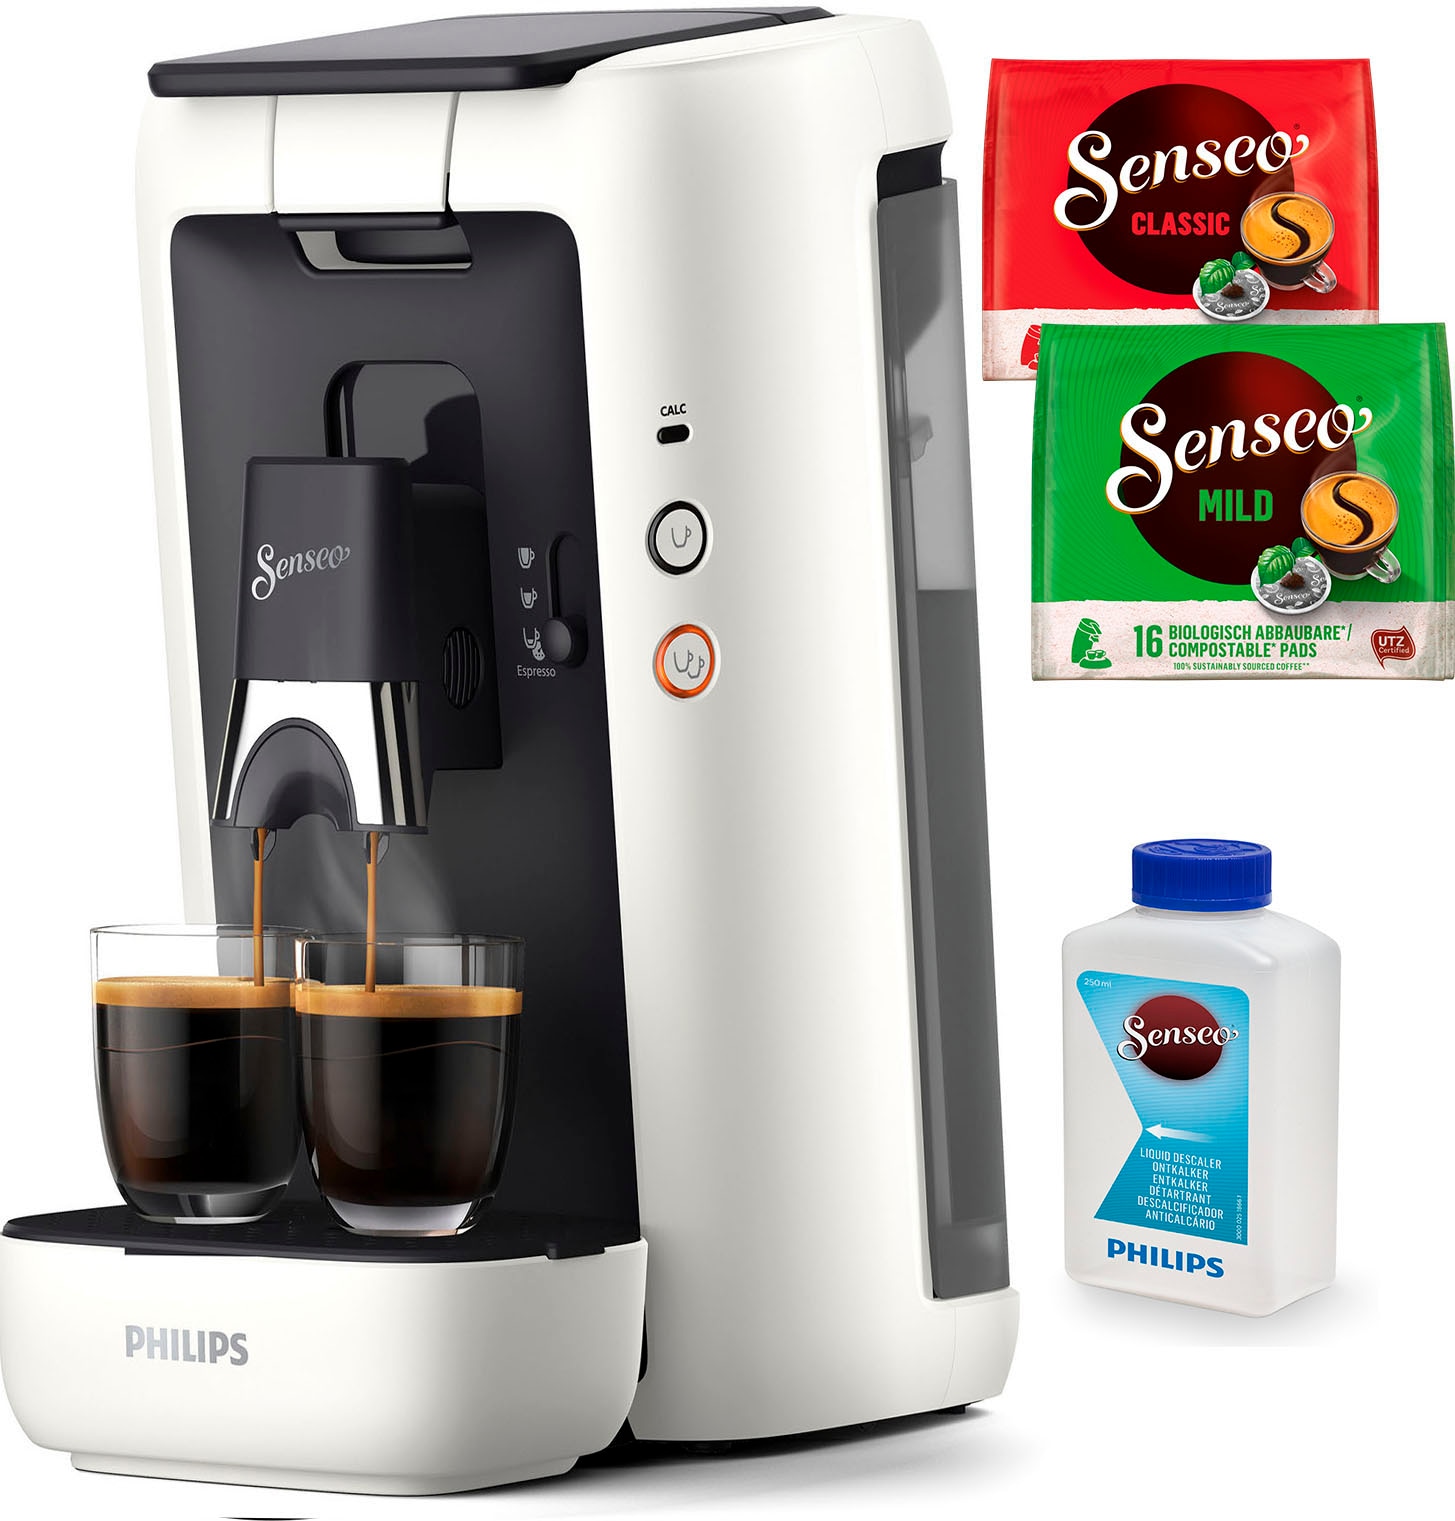 aus Gratis-Zugaben Wert Kaffeepadmaschine Philips Plastik, UVP Memo-Funktion, 14,- recyceltem 80% im von +3 inkl. € Senseo CSA260/10, Kaffeespezialitäten«, »Maestro kaufen